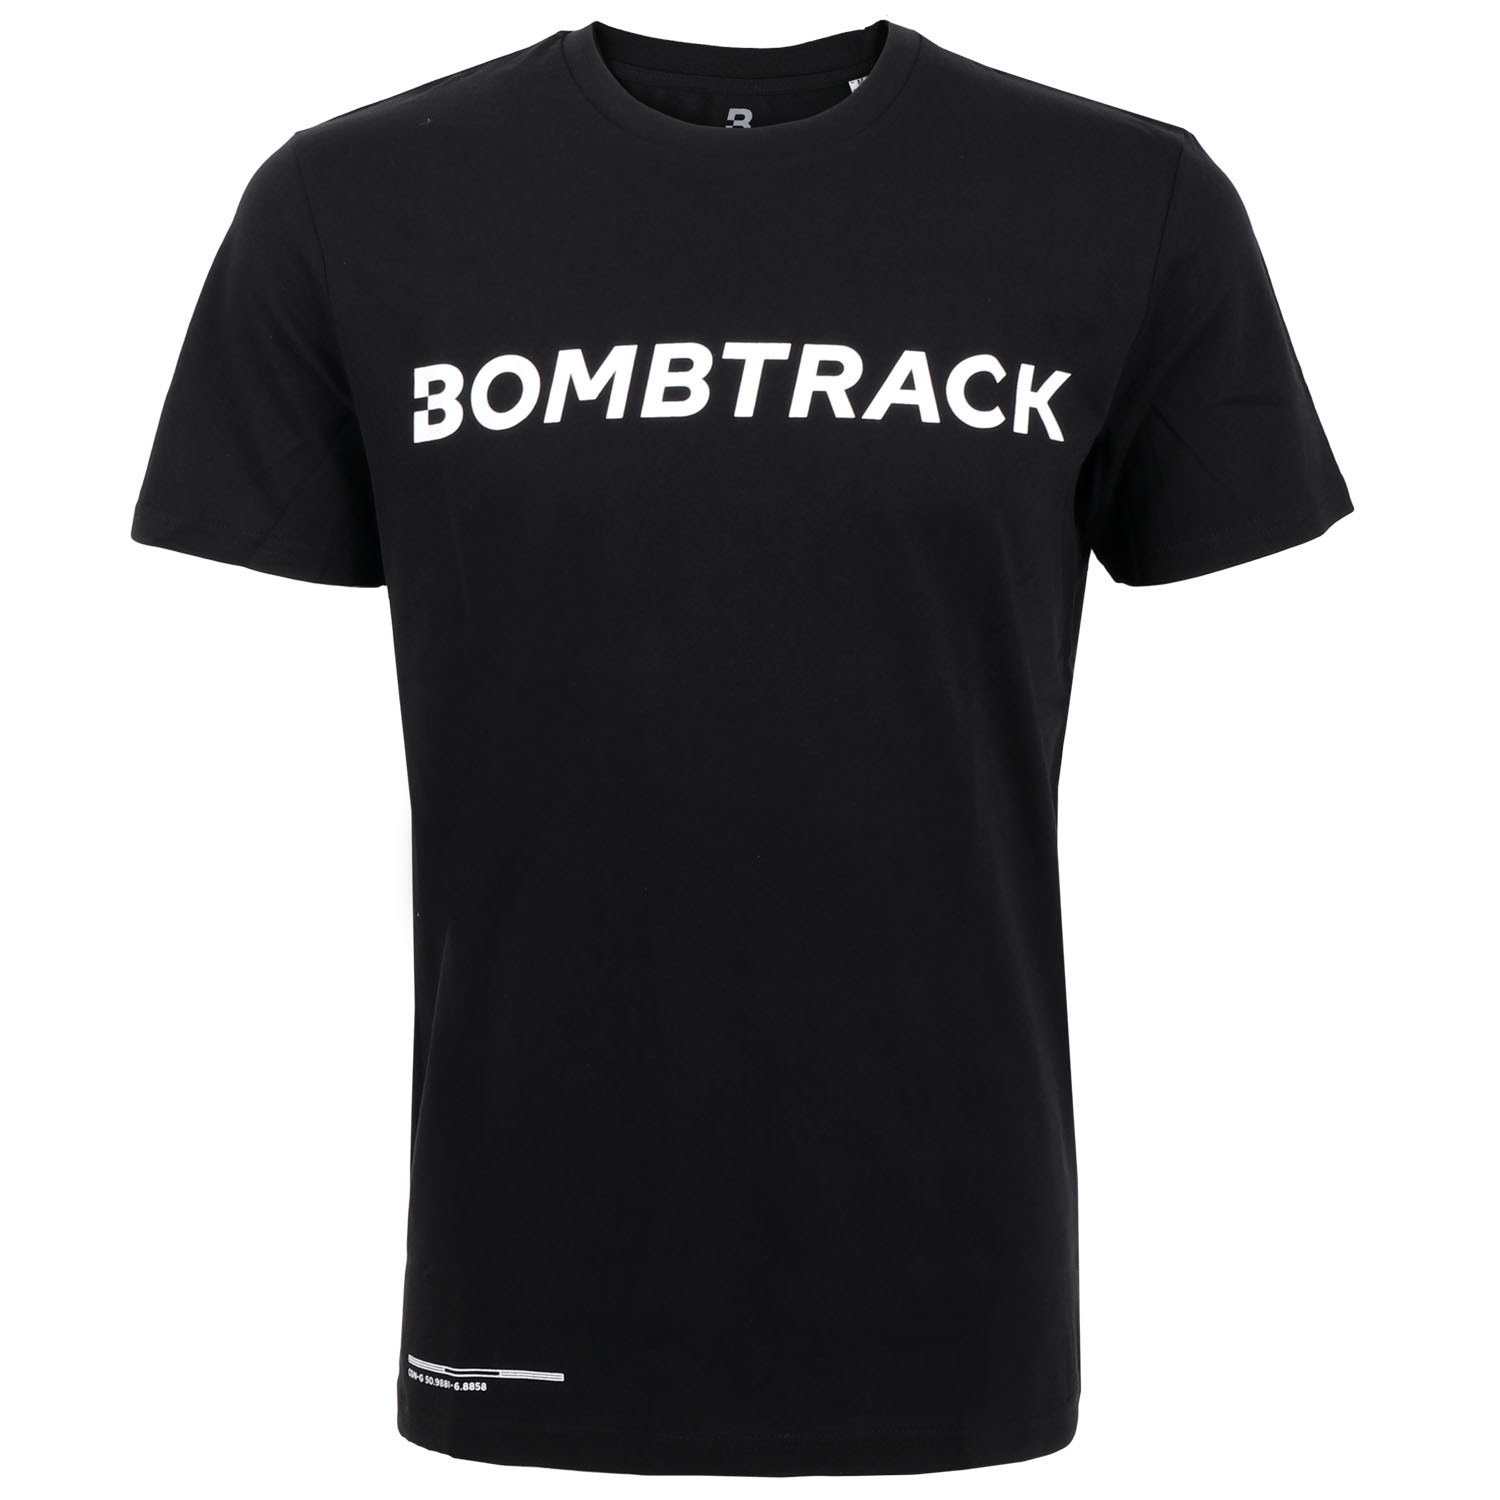 Produktbild von Bombtrack LOGO T-Shirt - schwarz - weiß print